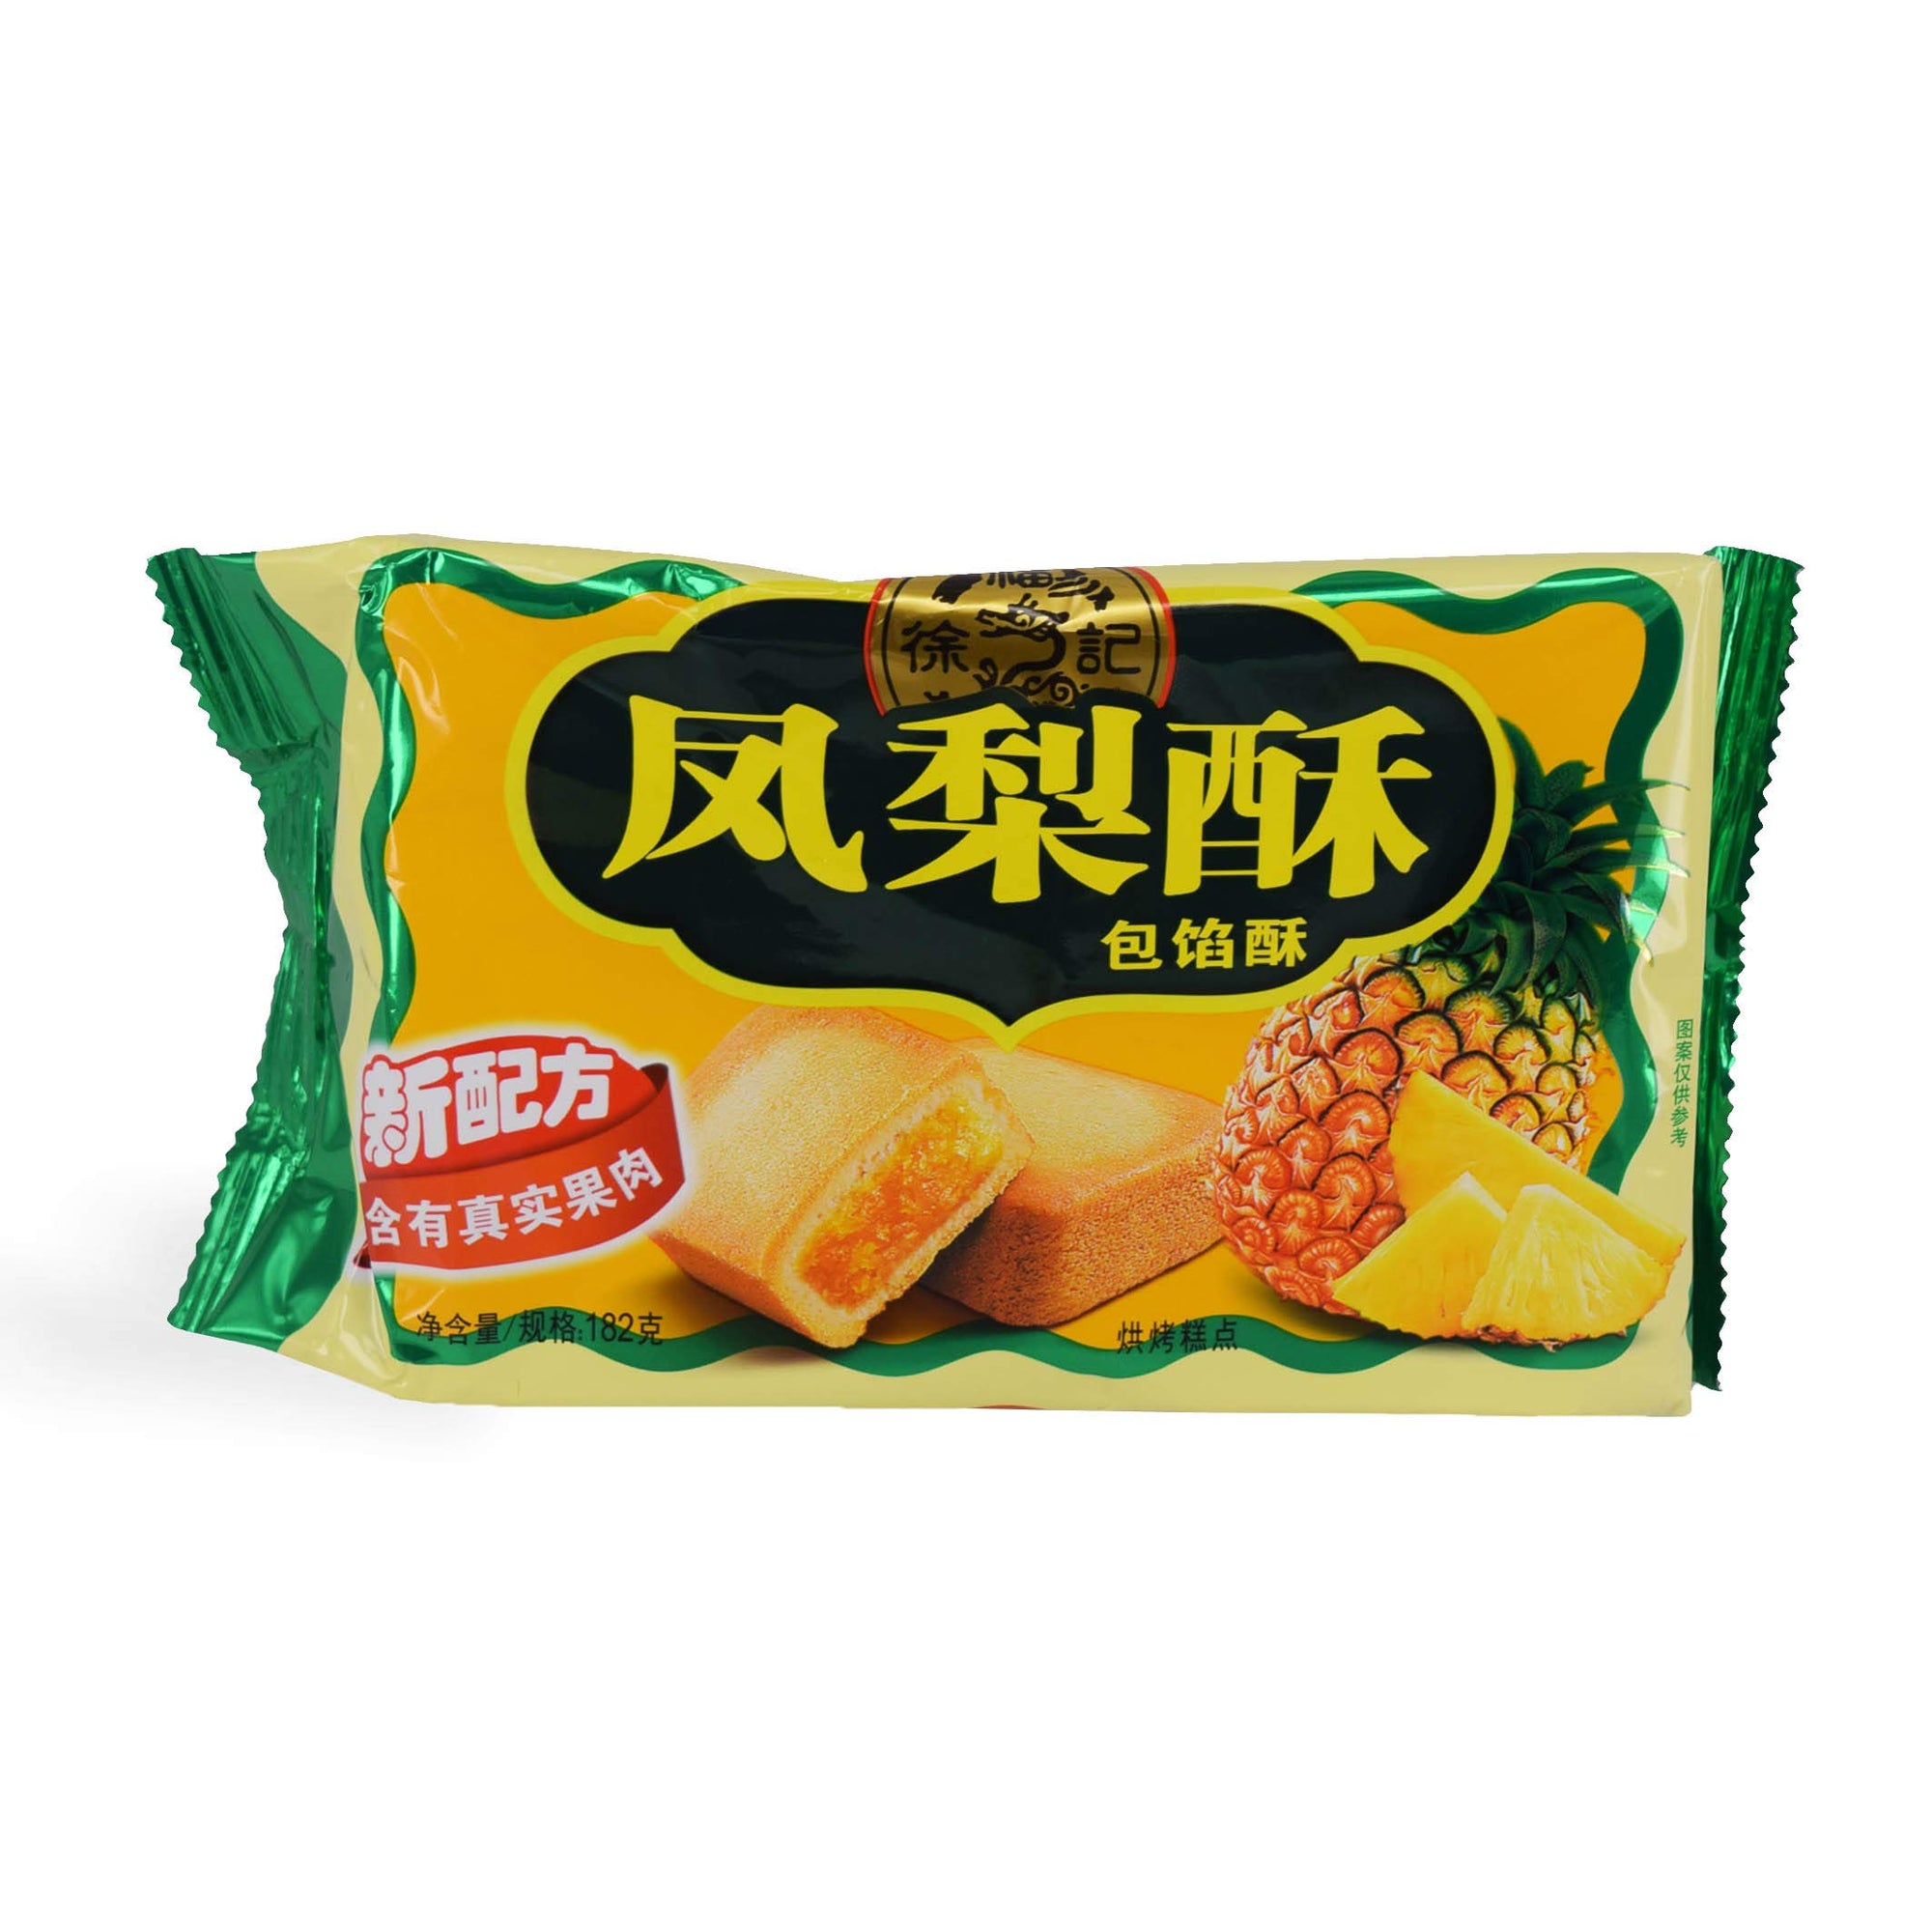 XuFuJi Cookie 徐福记 凤梨酥 Pineapple Flavor Cookie 182g (pack of 2)